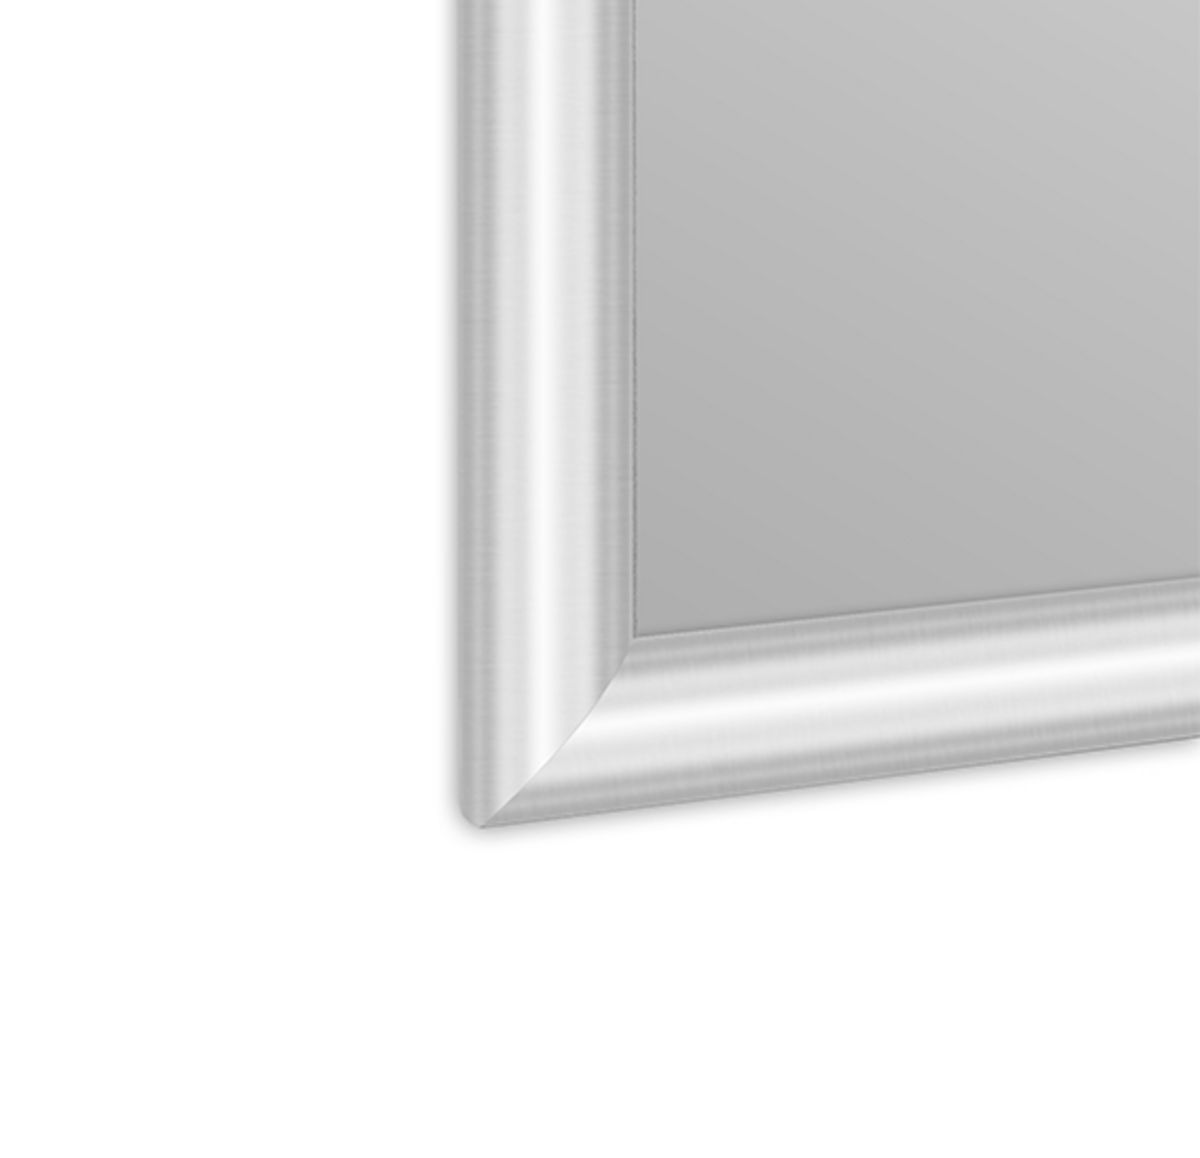 snapframe stainless steel finish frame.jpg